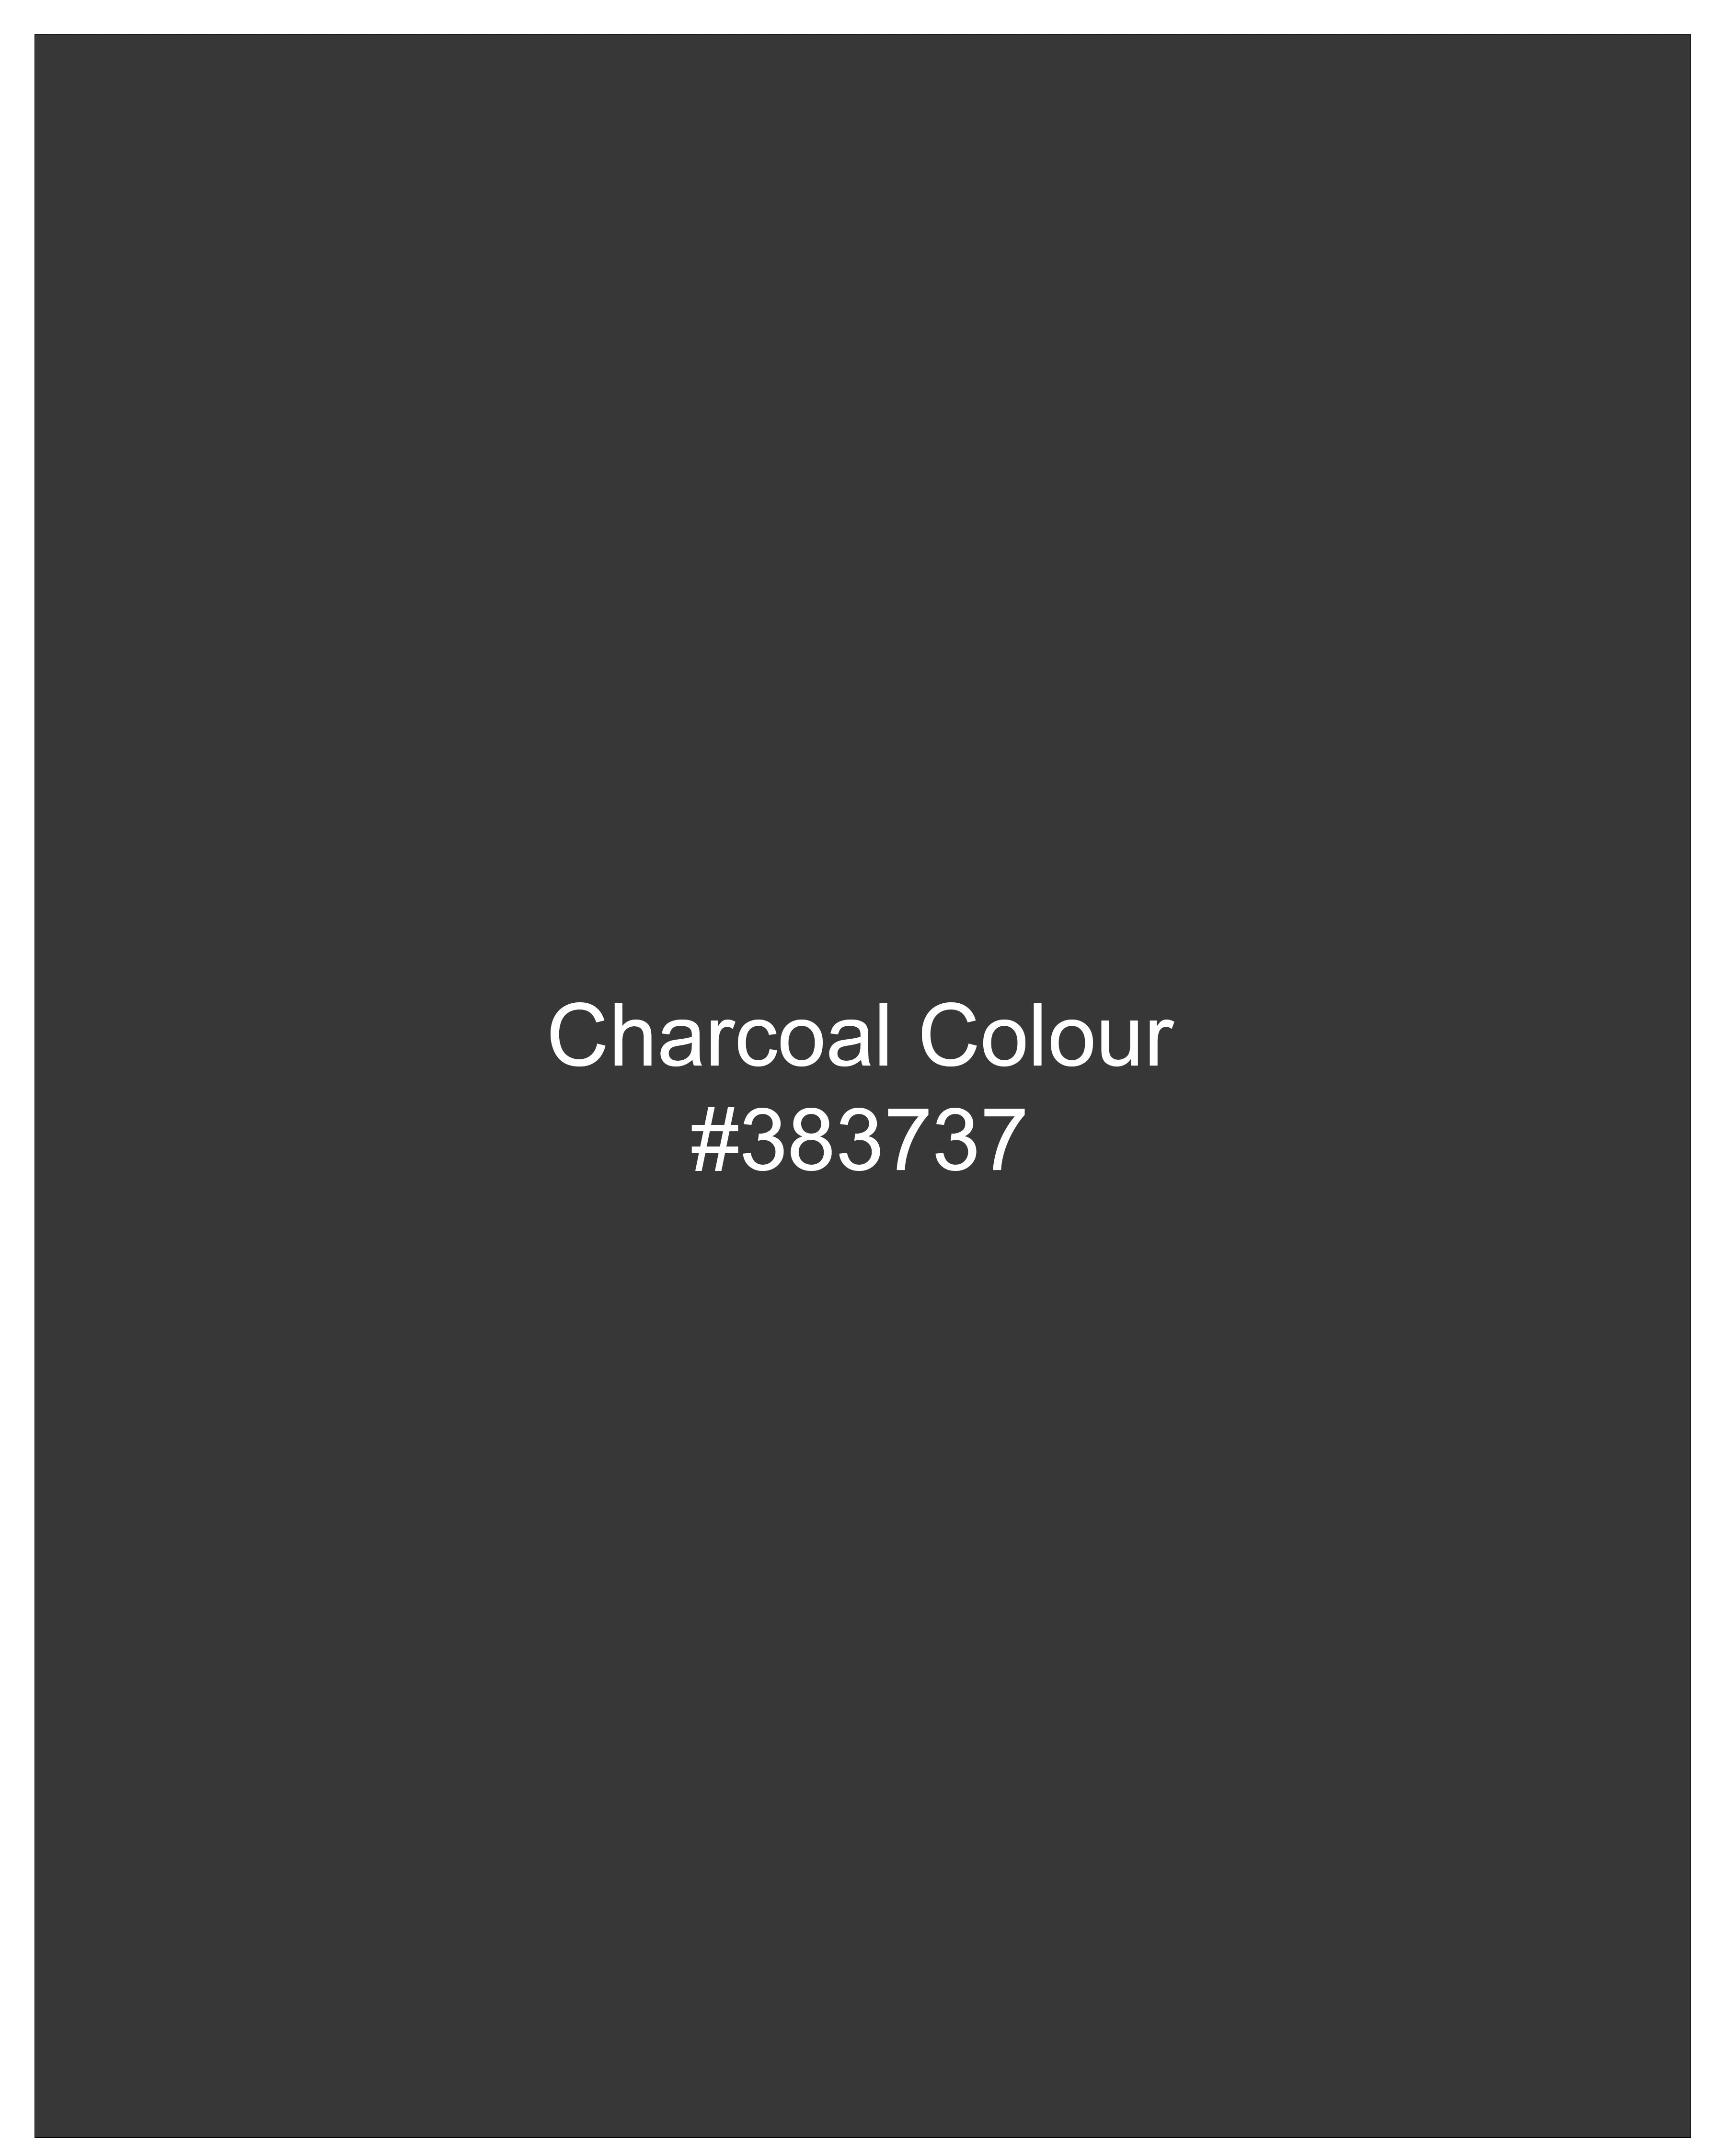 Charcoal Gray Windowpane Pants T2473-28, T2473-30, T2473-32, T2473-34, T2473-36, T2473-38, T2473-40, T2473-42, T2473-44